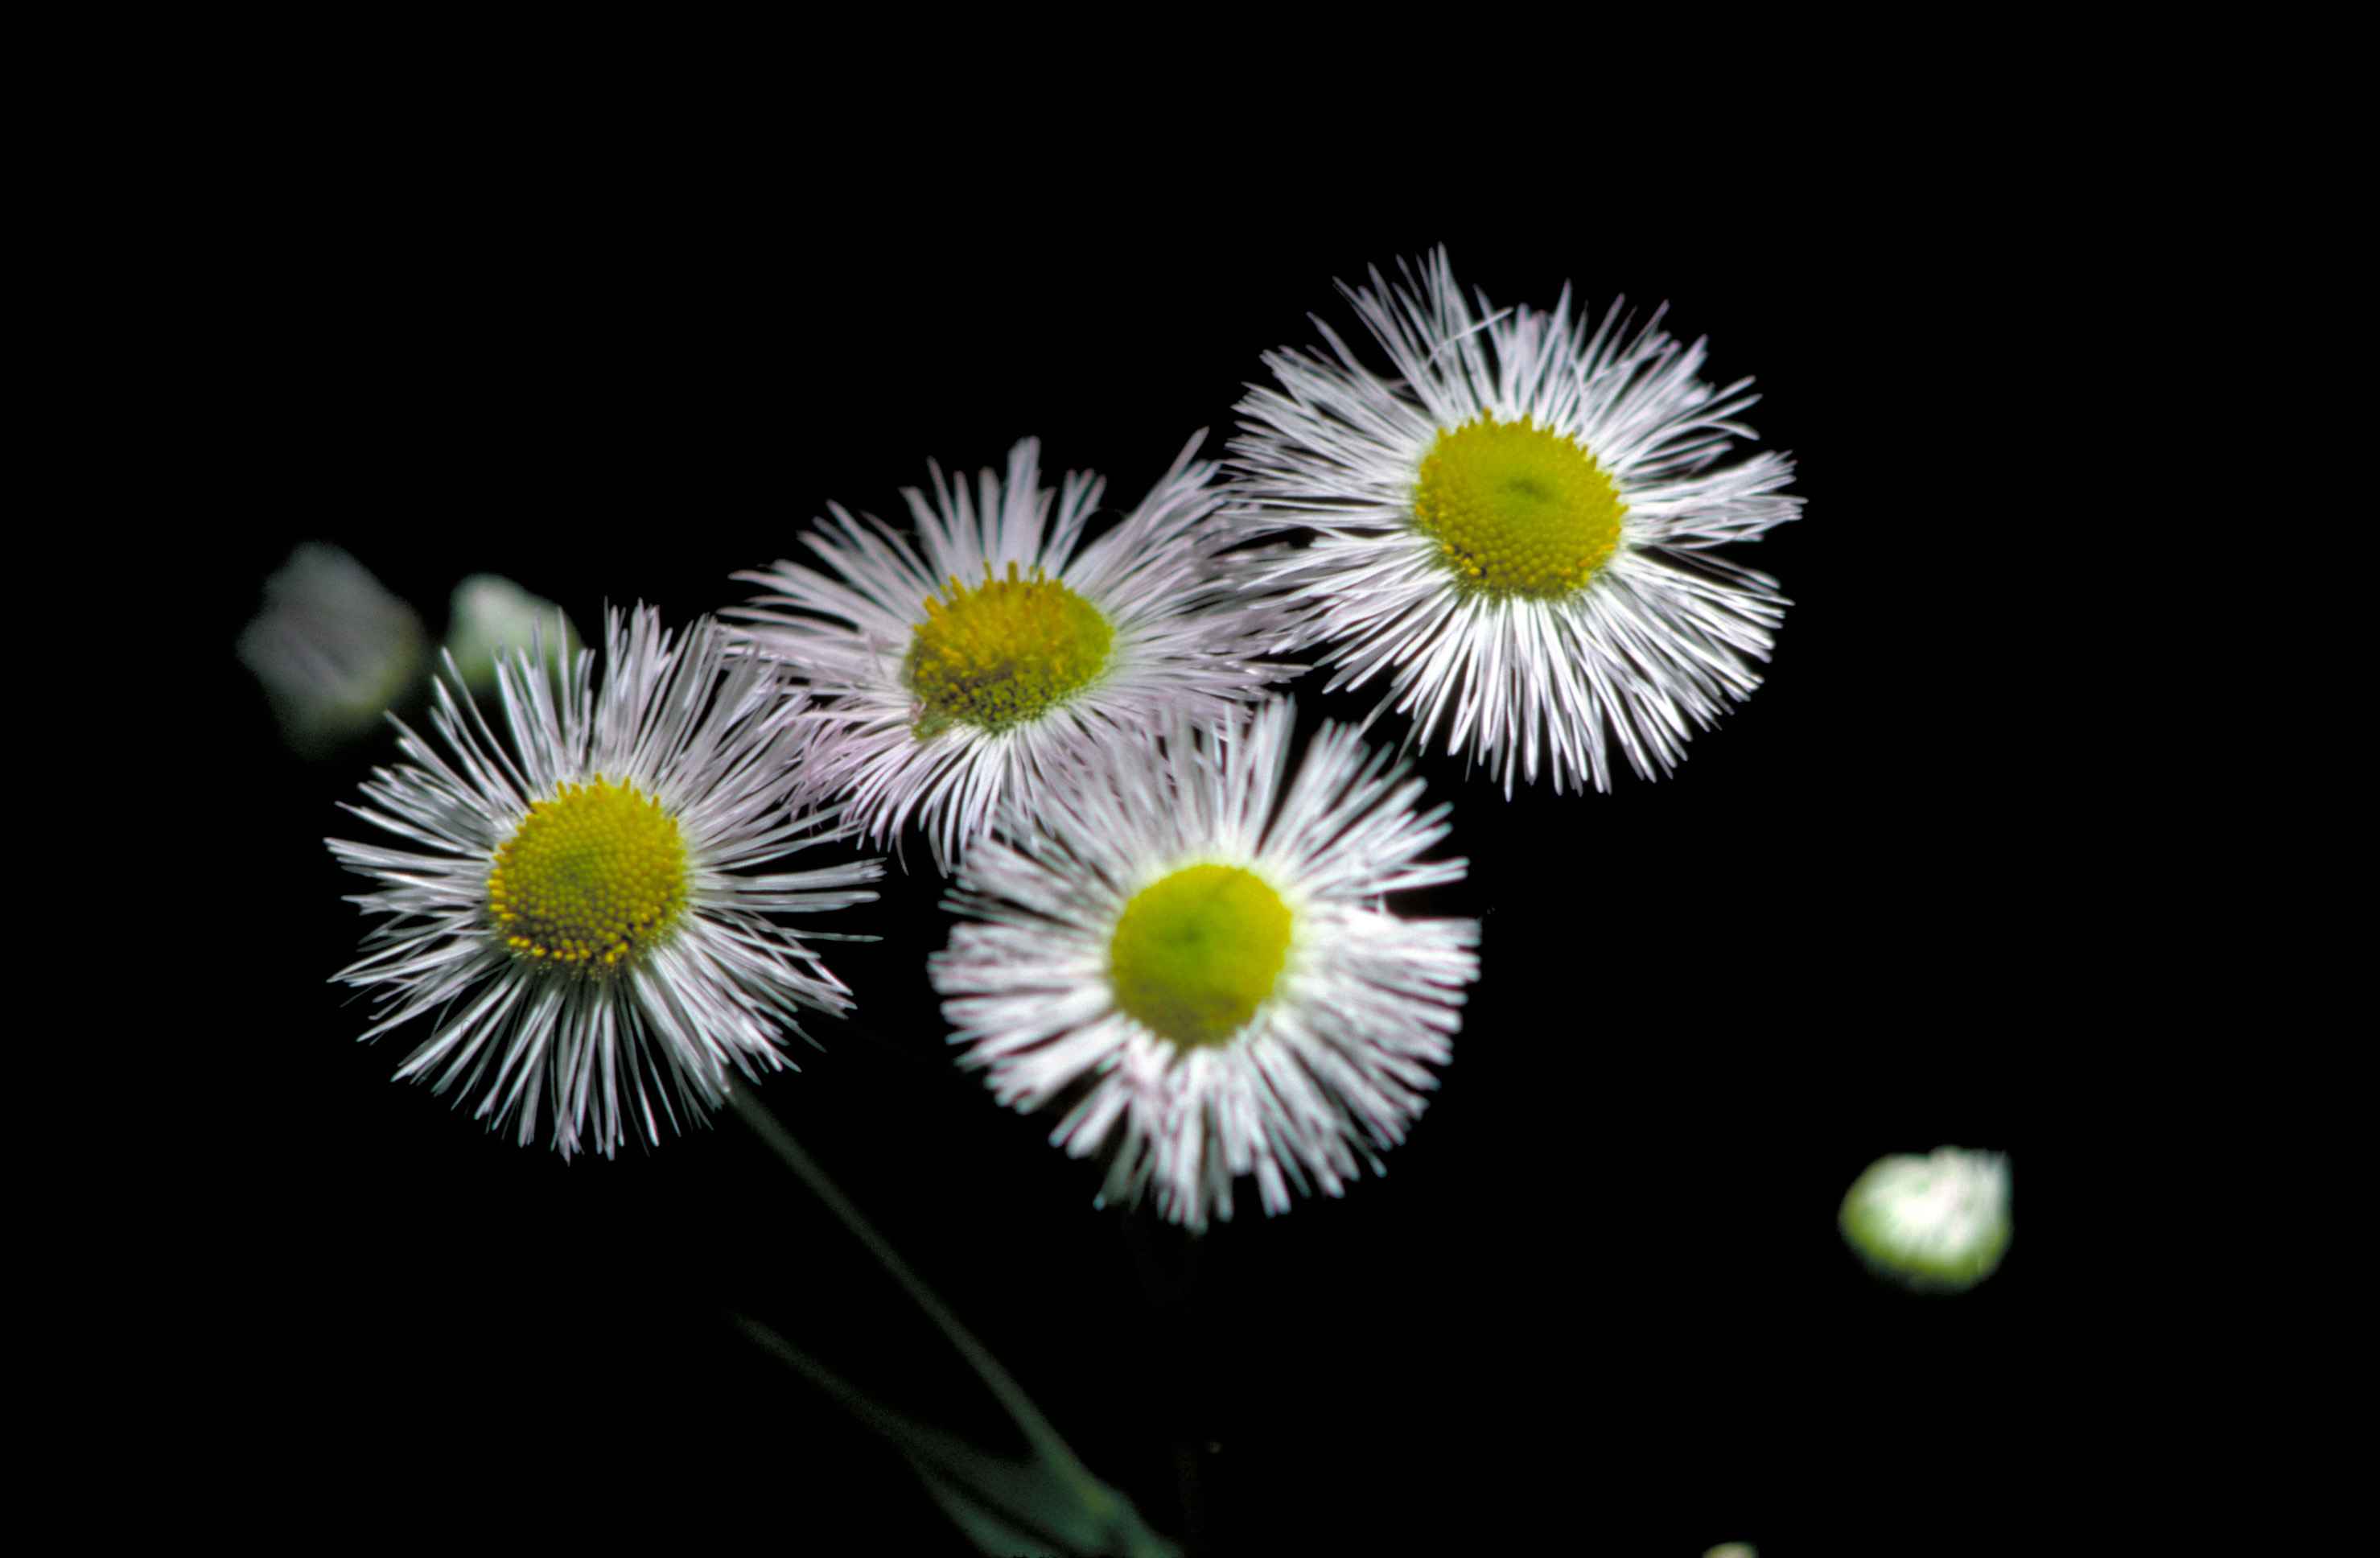 Image libre: philadelphia, vergerette, fleur blanche, jaune, centre,  erigeron, philadelphicus